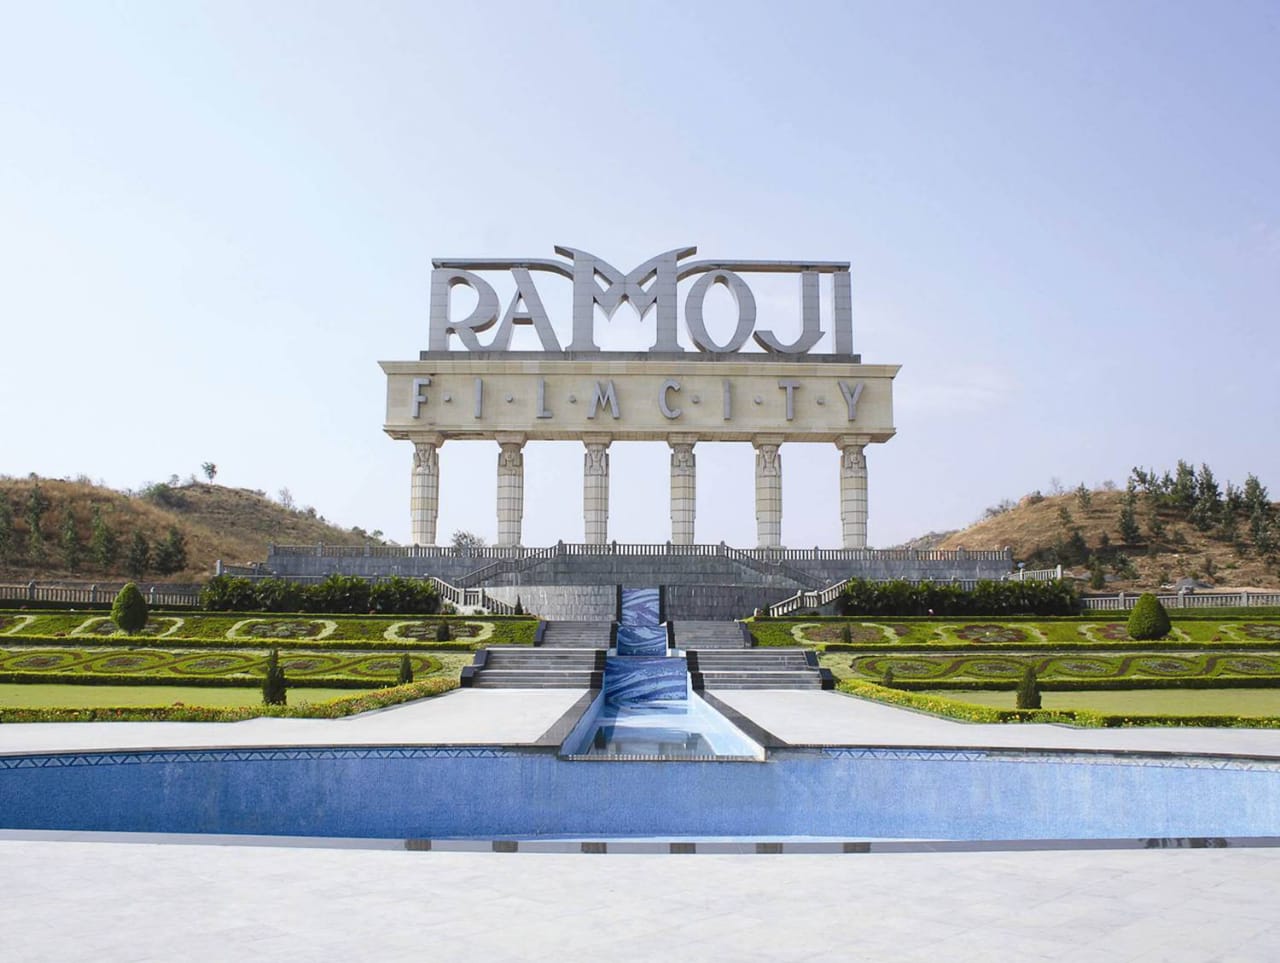 अपने पर्यटकों का स्‍वागत 18 फरवरी से करेगी रामोजी फिल्म सिटी